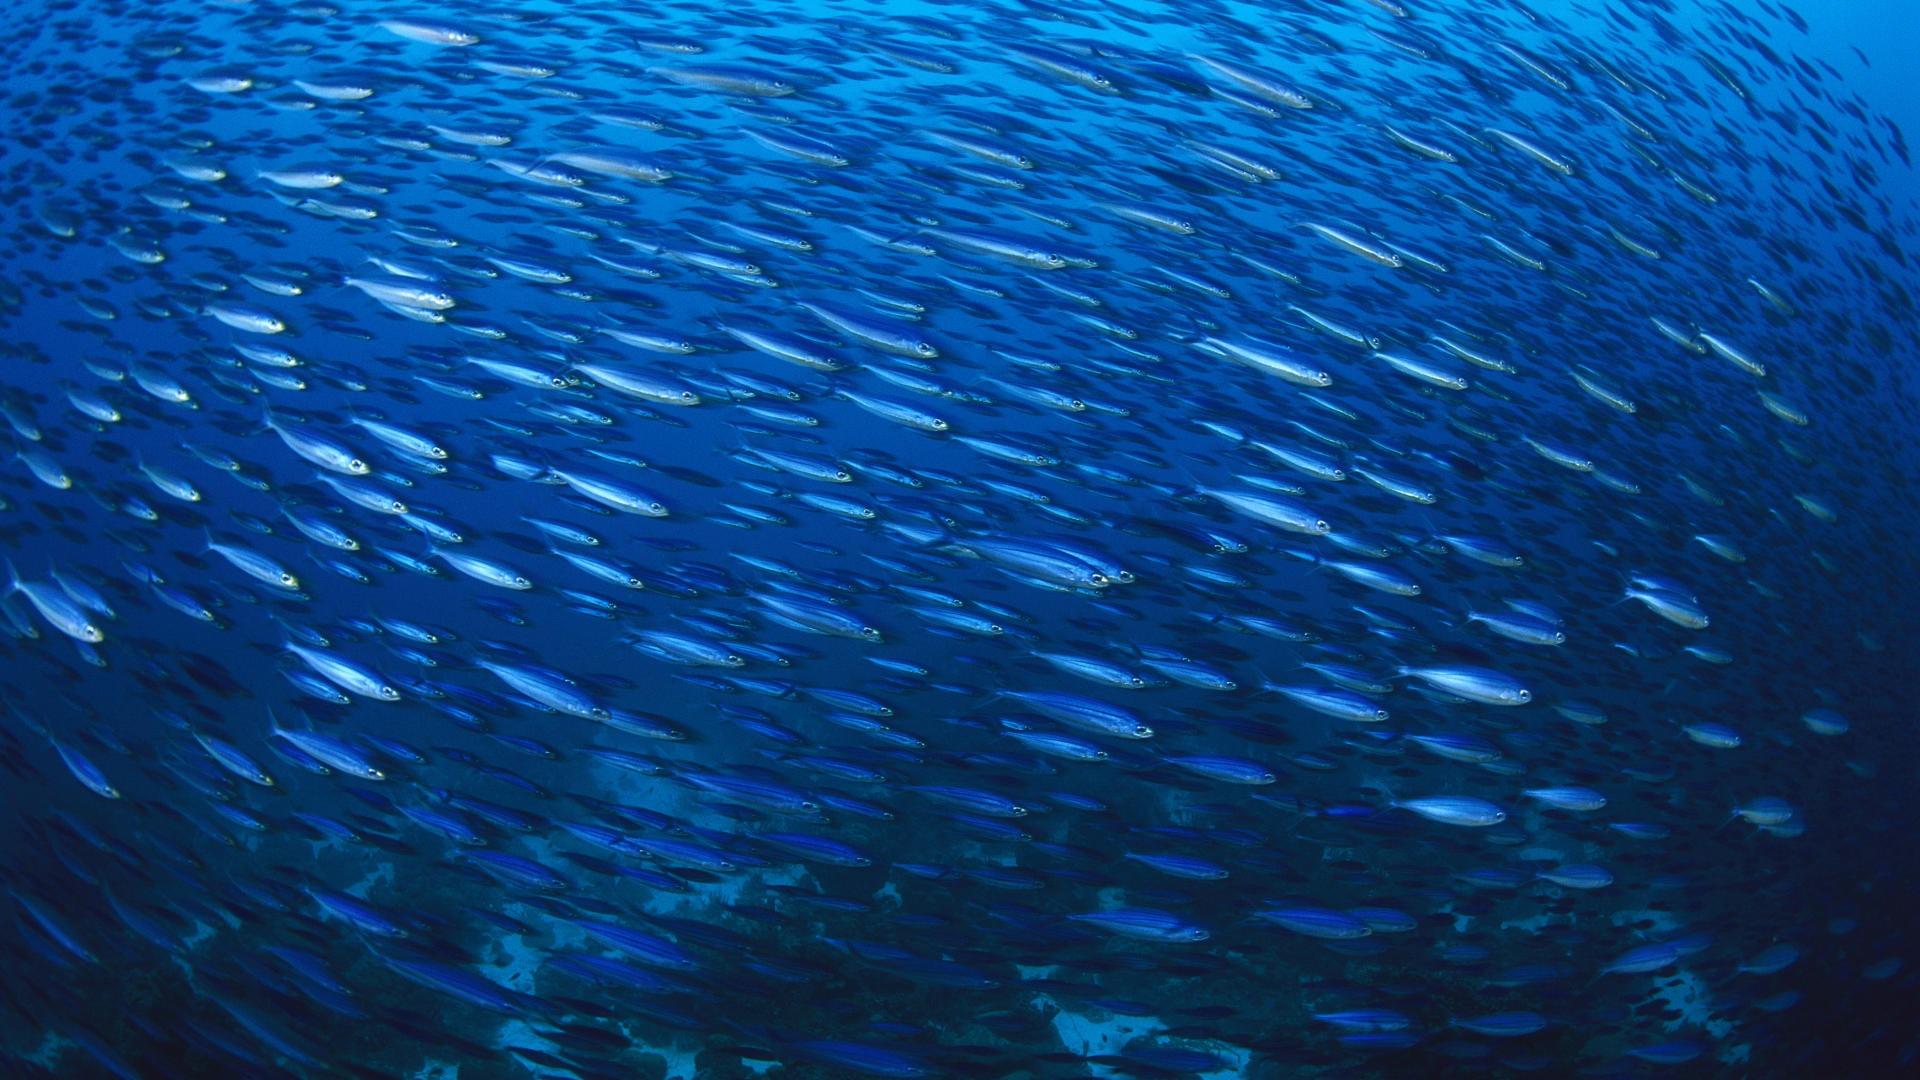 Underwater school of forage fish